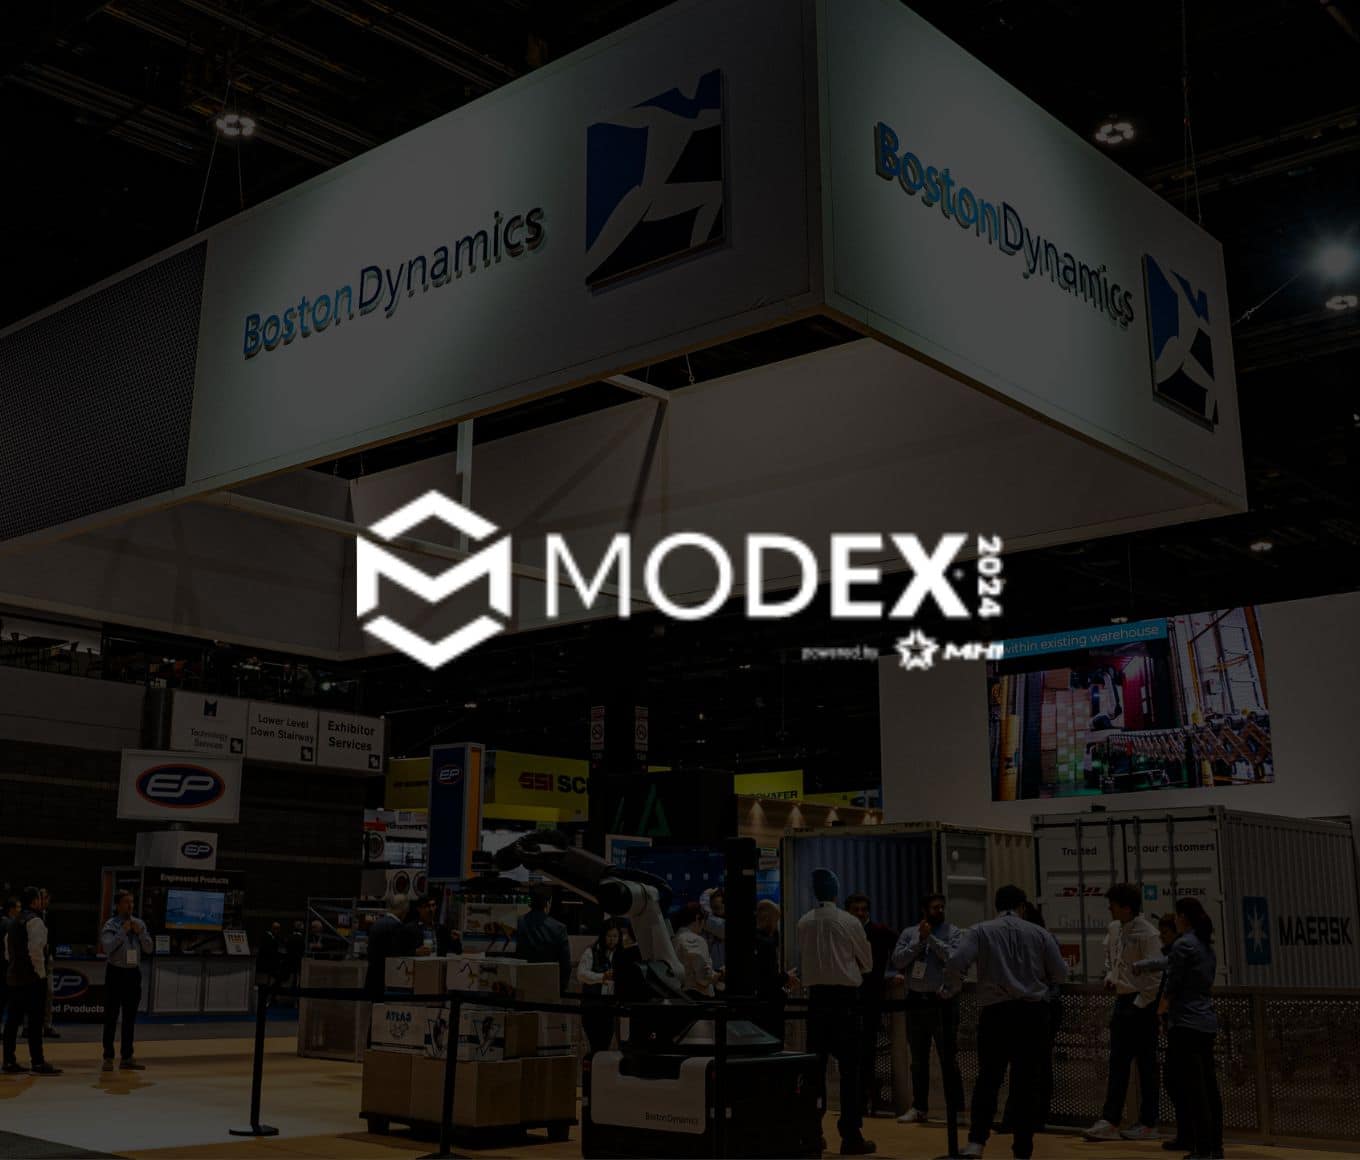 MODEX Logo over a trade show booth